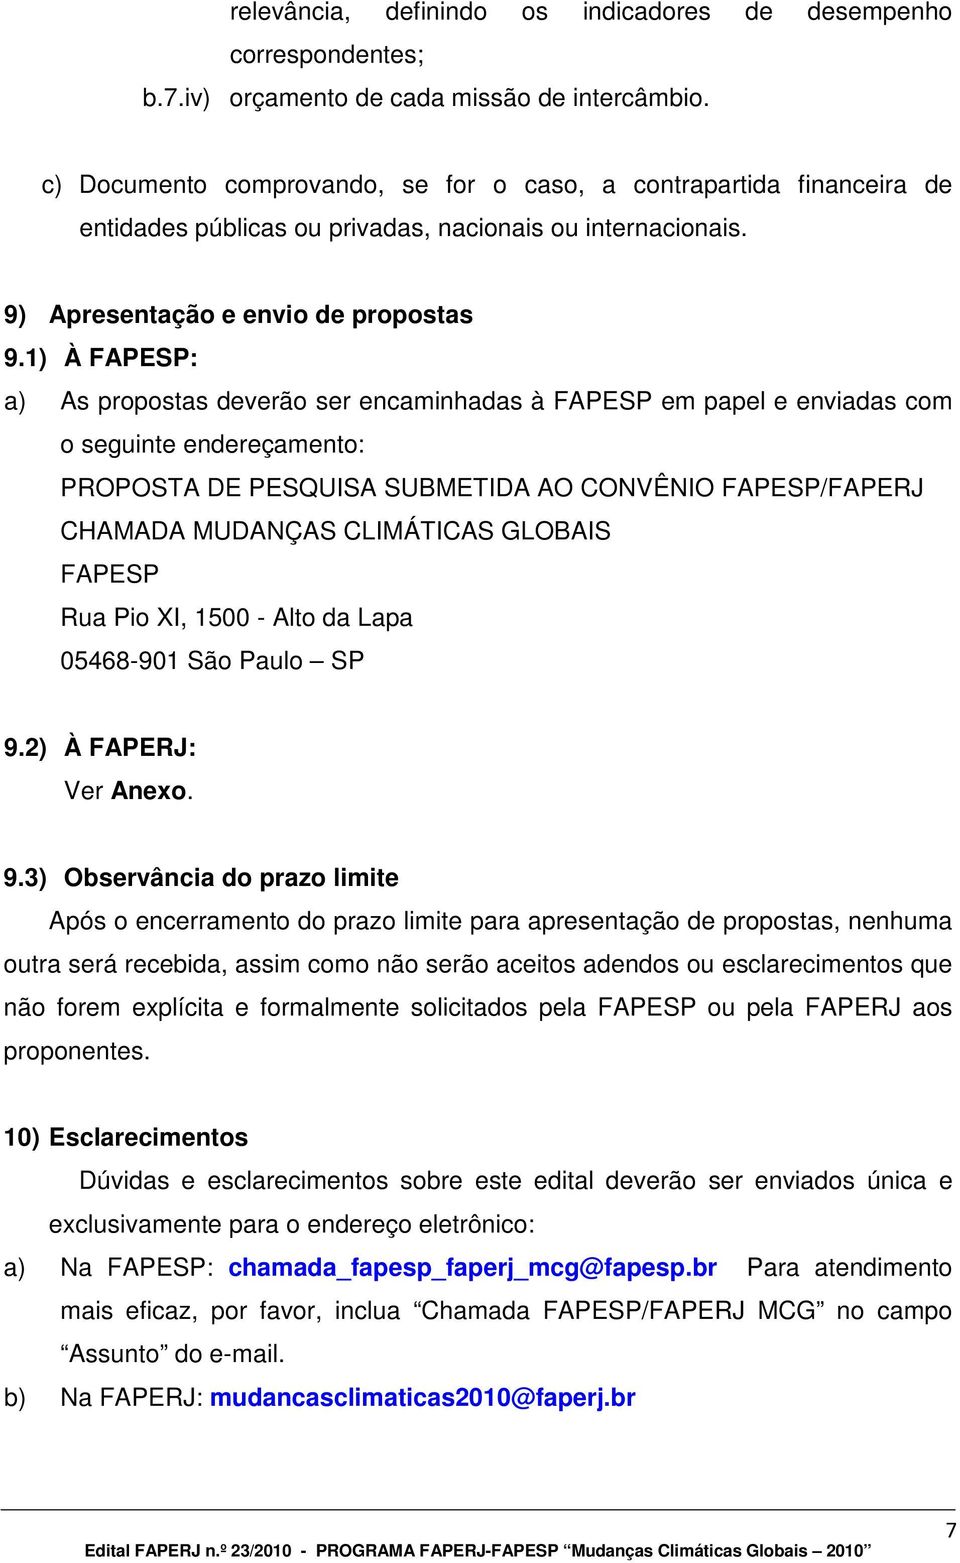 1) À FAPESP: a) As propostas deverão ser encaminhadas à FAPESP em papel e enviadas com o seguinte endereçamento: PROPOSTA DE PESQUISA SUBMETIDA AO CONVÊNIO FAPESP/FAPERJ CHAMADA MUDANÇAS CLIMÁTICAS